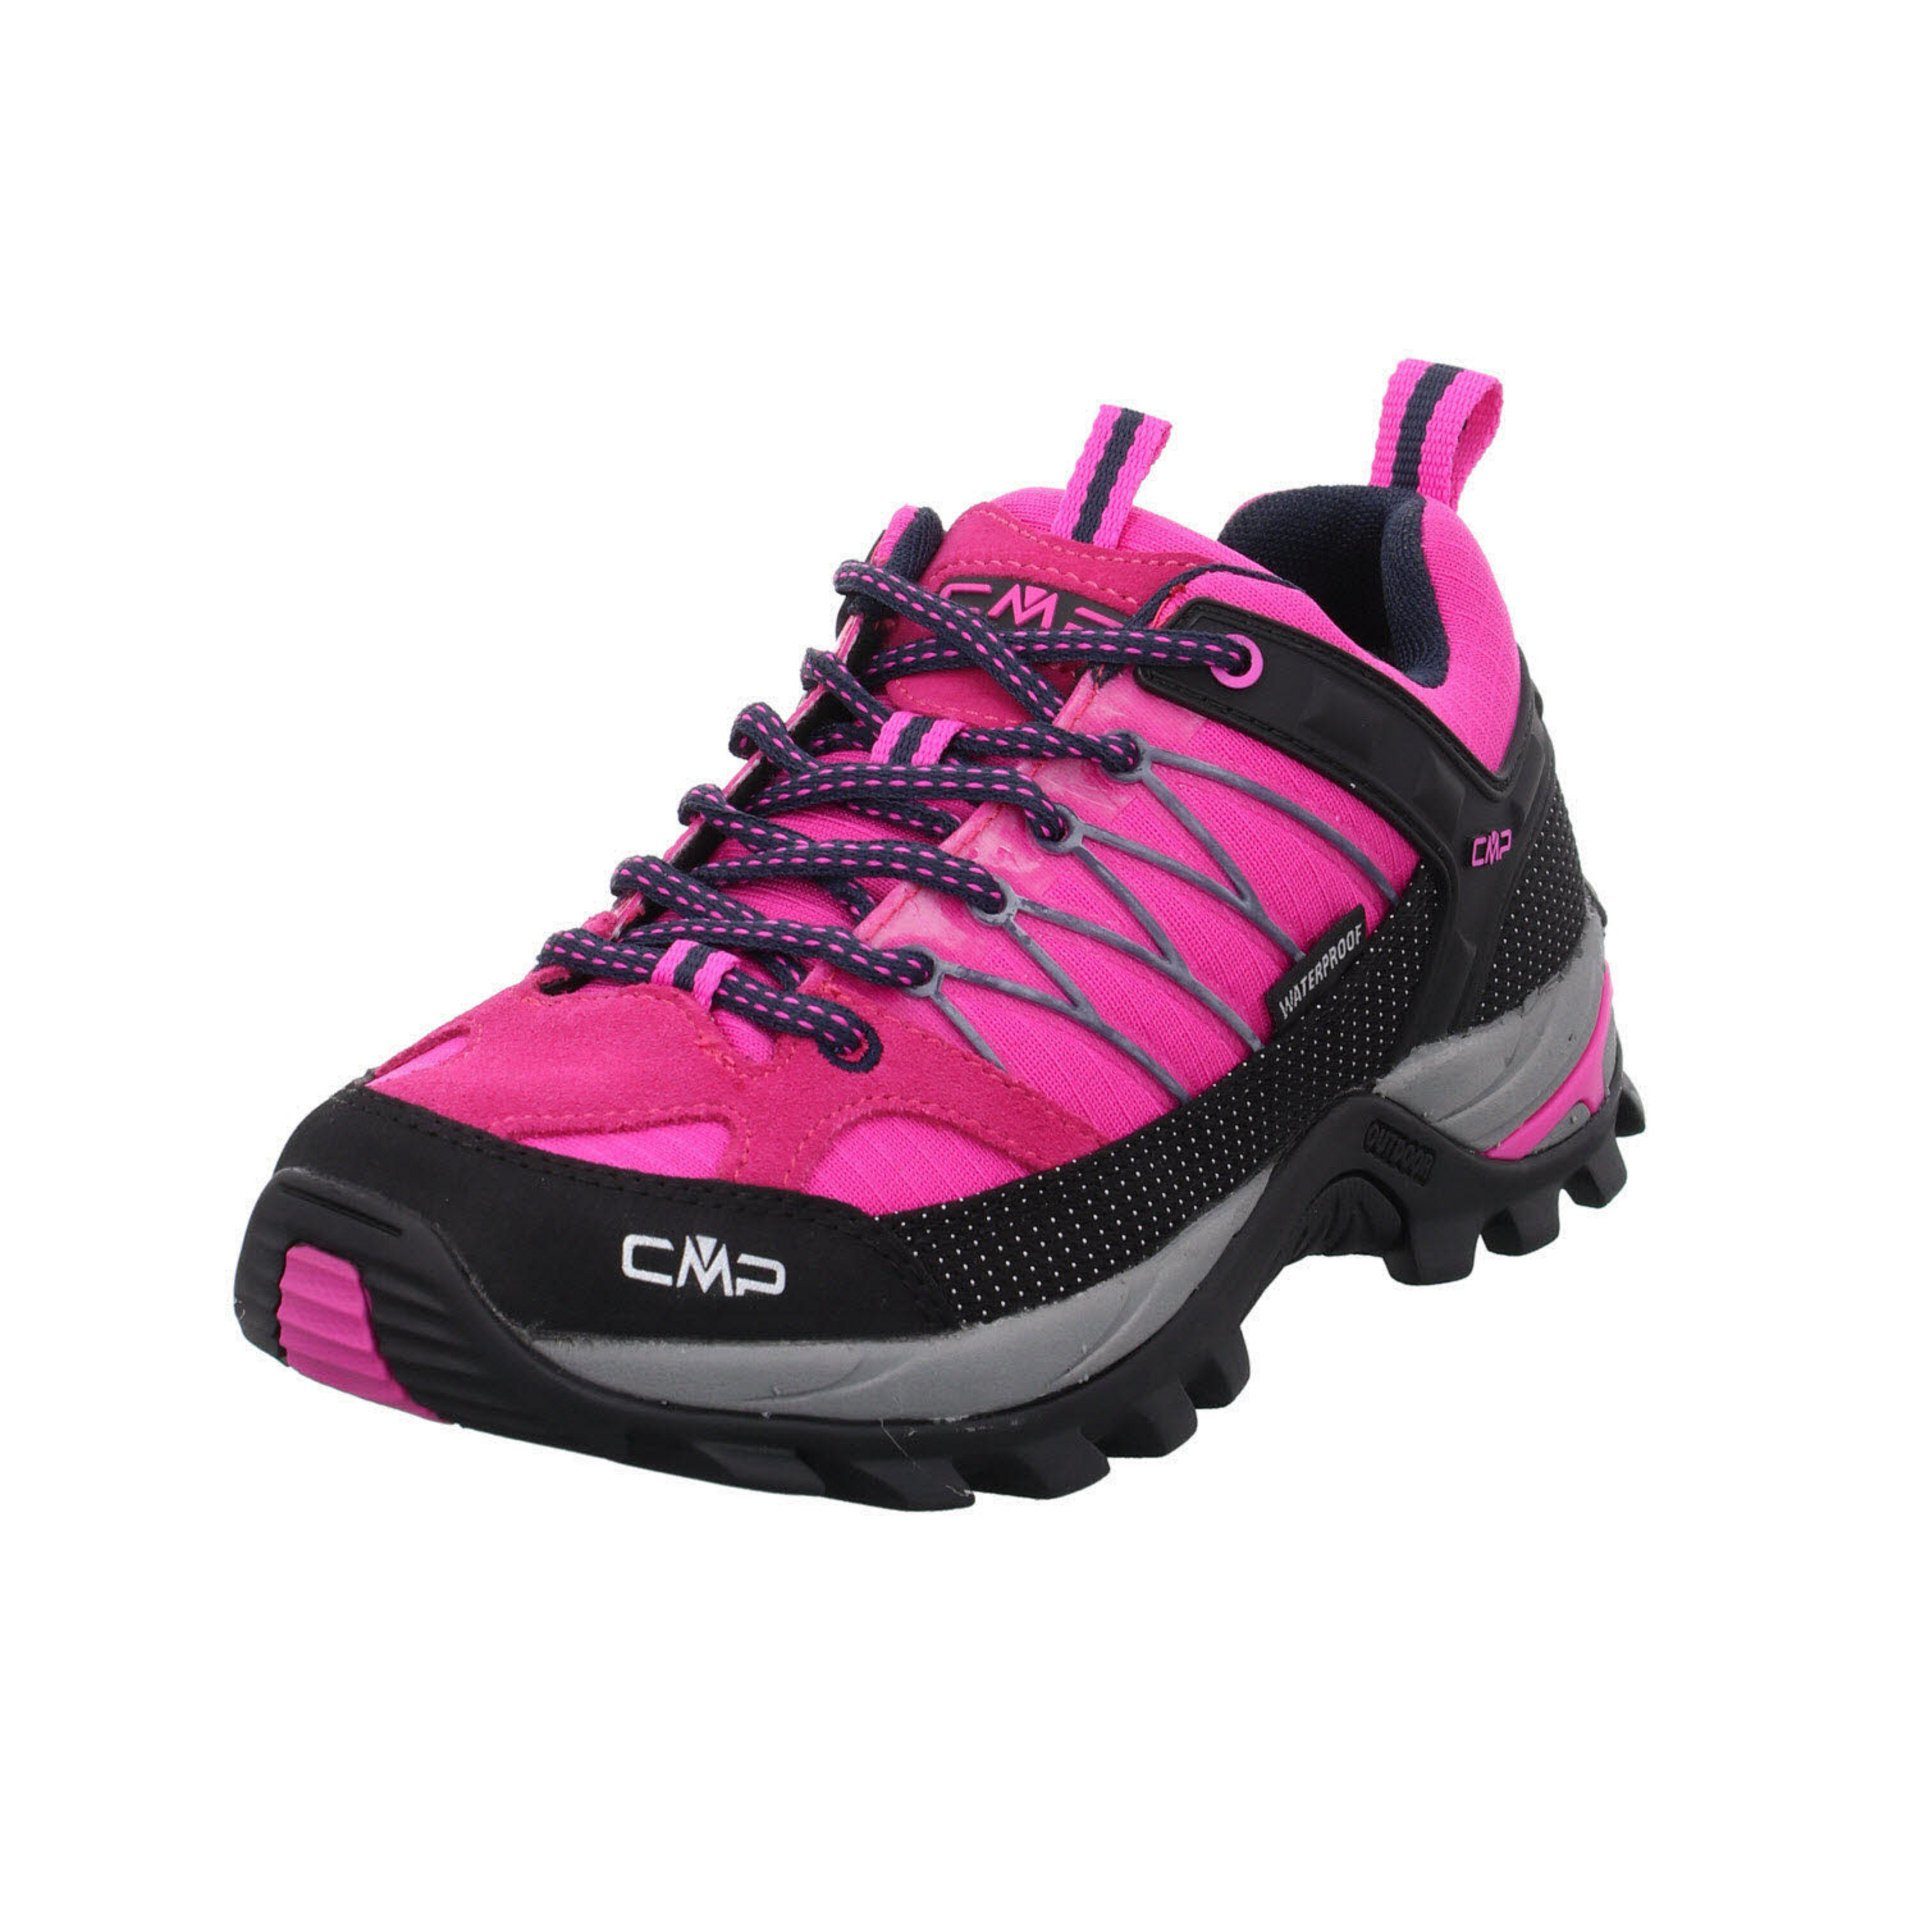 CMP Damen Schuhe Outdoor Rigel Low Outdoorschuh Outdoorschuh Leder-/Textilkombination pink fluo-b.blue (03201886)